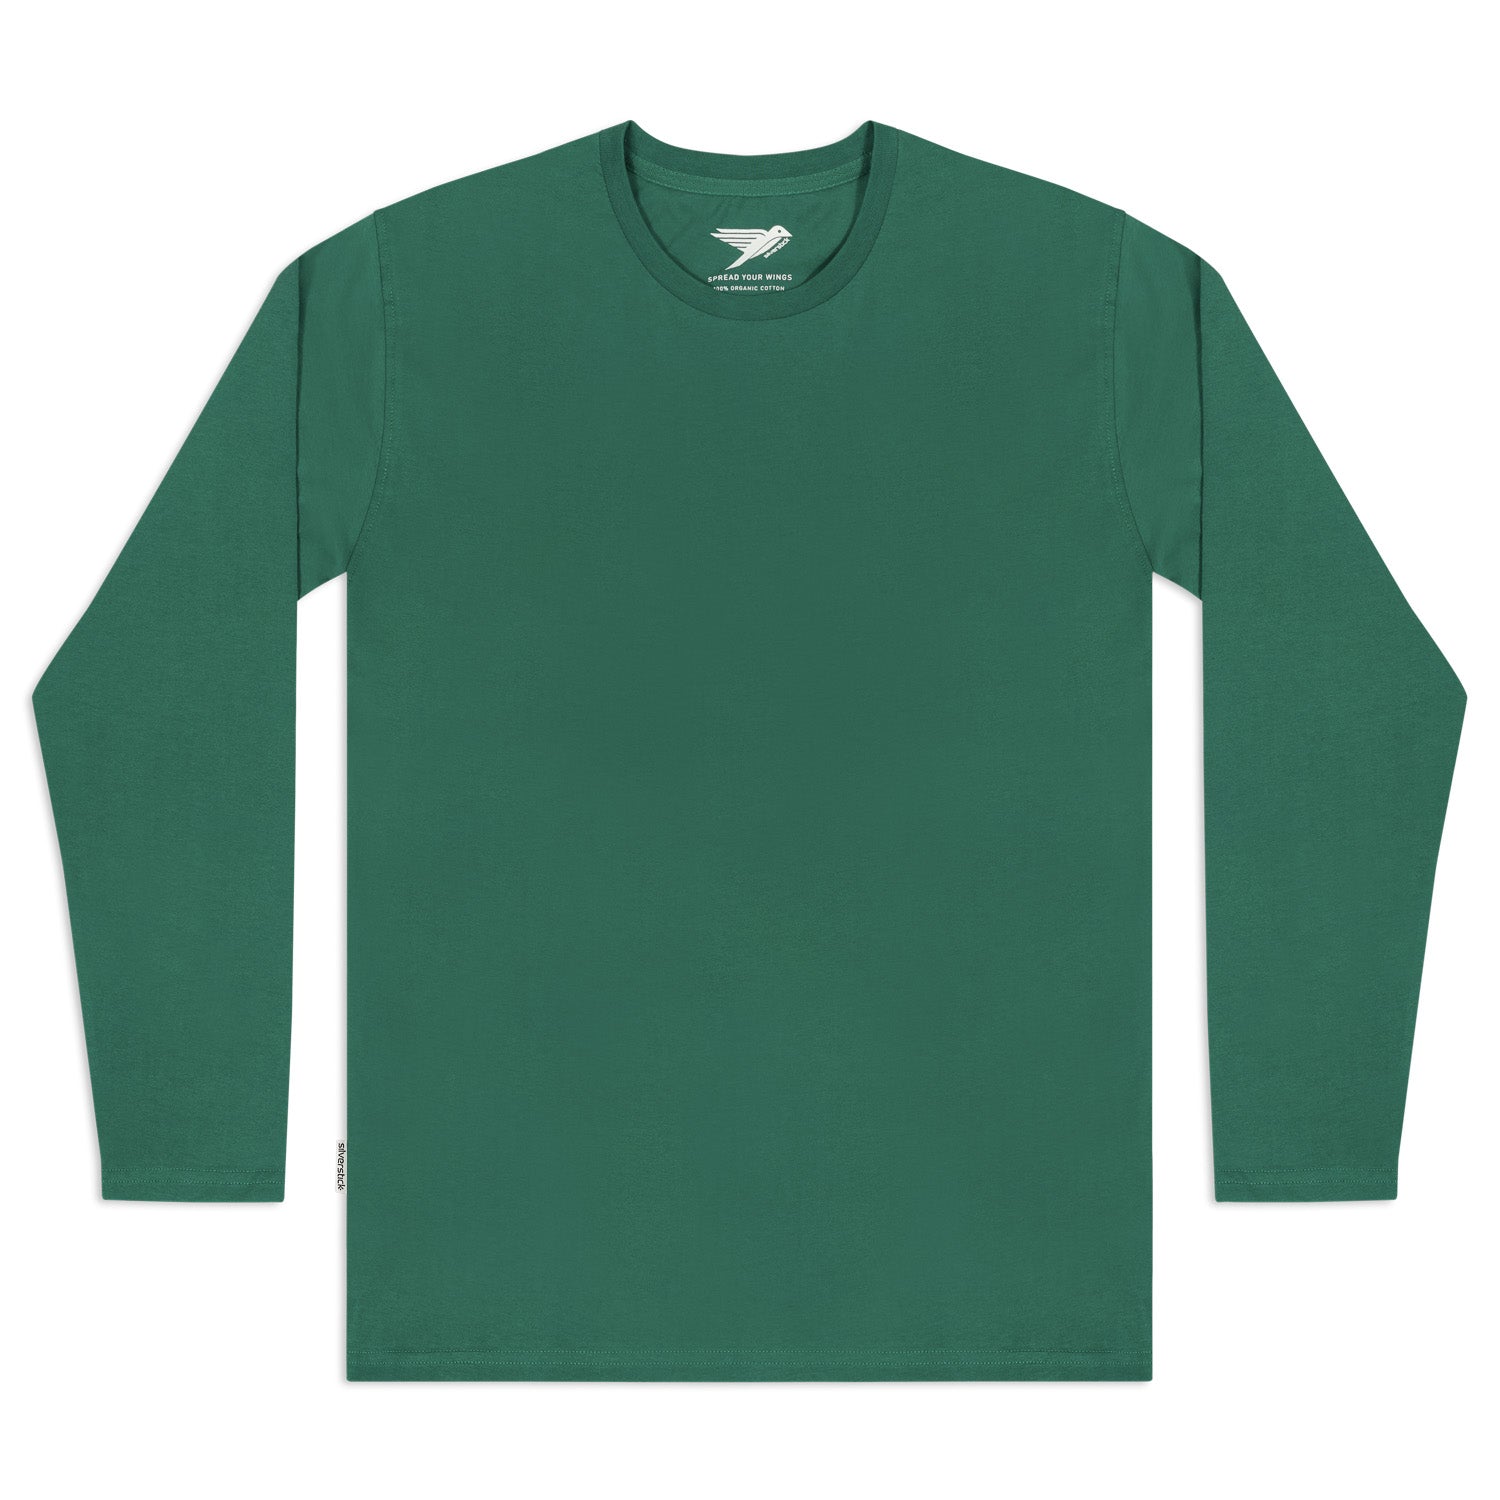 https://silverstick.co.uk/cdn/shop/products/silverstick-mens-adventure-organic-cotton-long-sleeve-t-shirt-hunter-green-front-Web-1500.jpg?v=1612259810